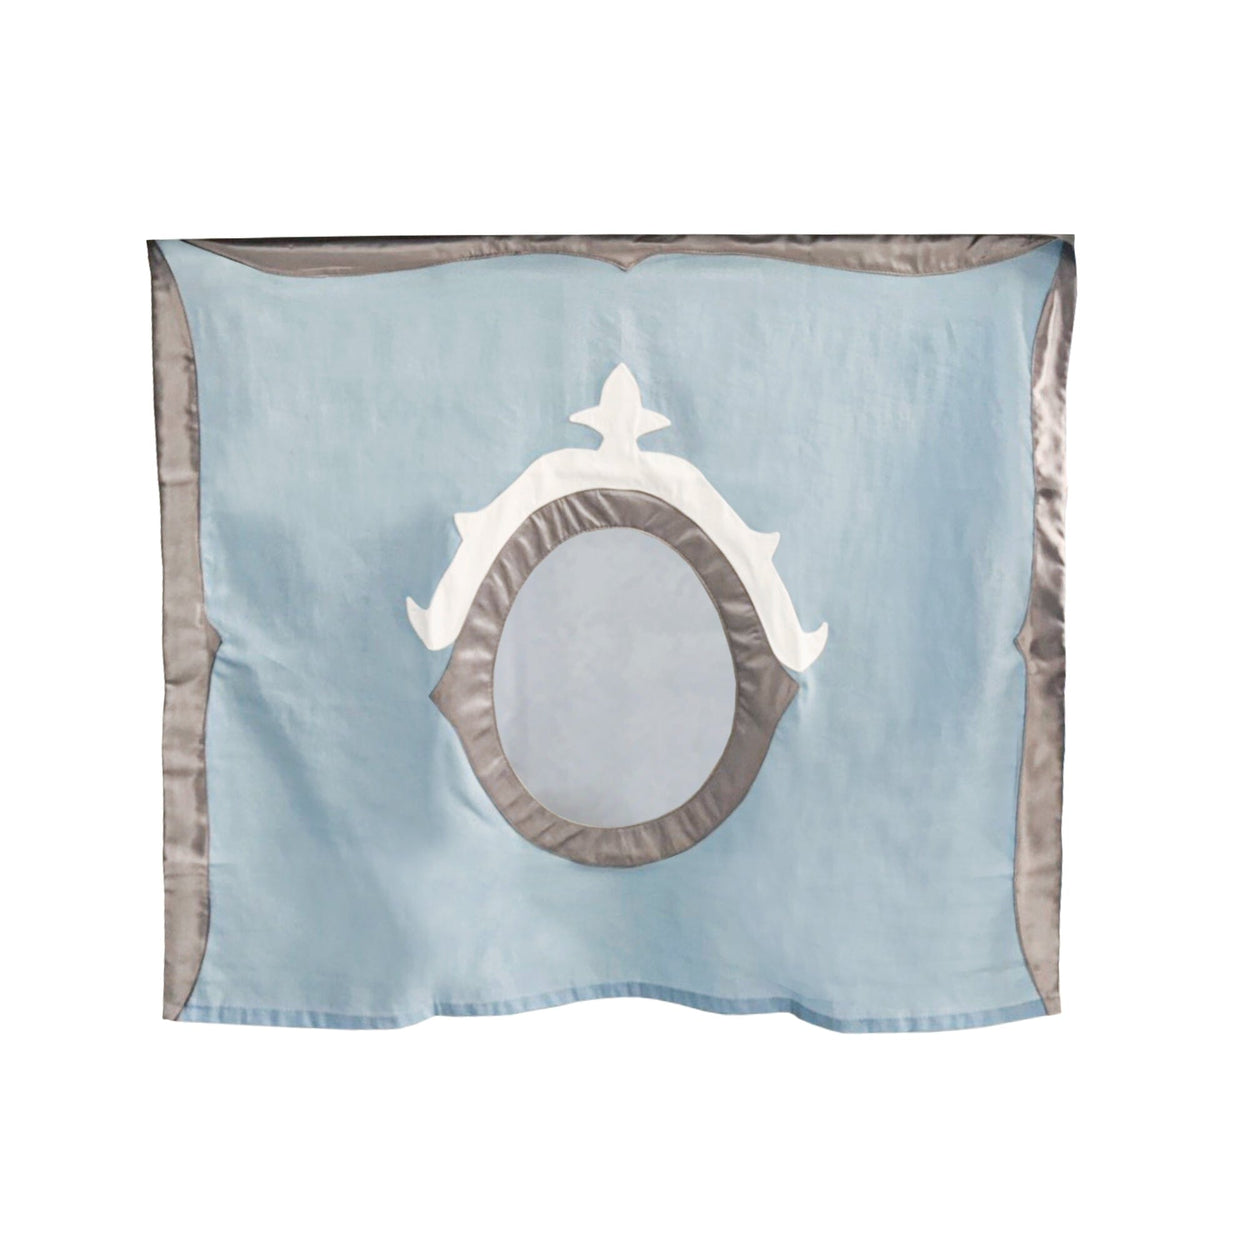 180035-051 : Curtain Princess Curtain, Blue/Silver